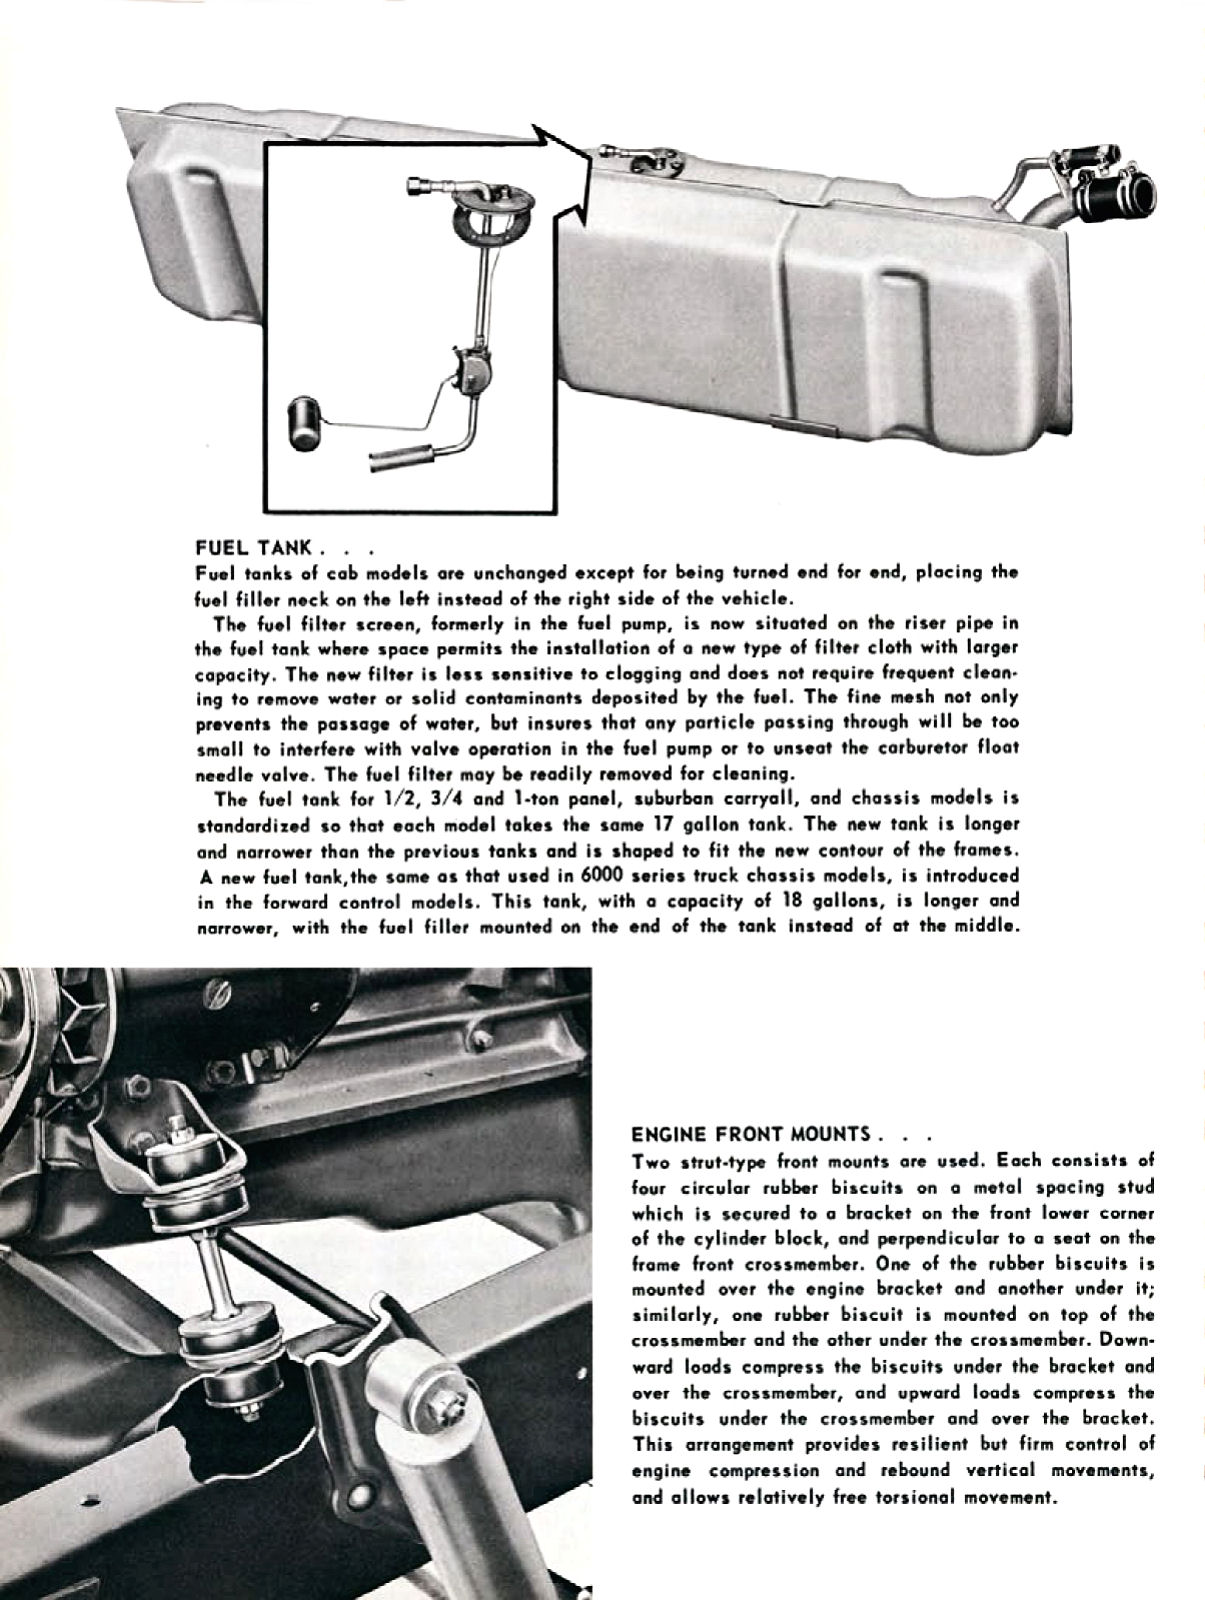 1955_Chevrolet_Truck_Engineering_Features-082